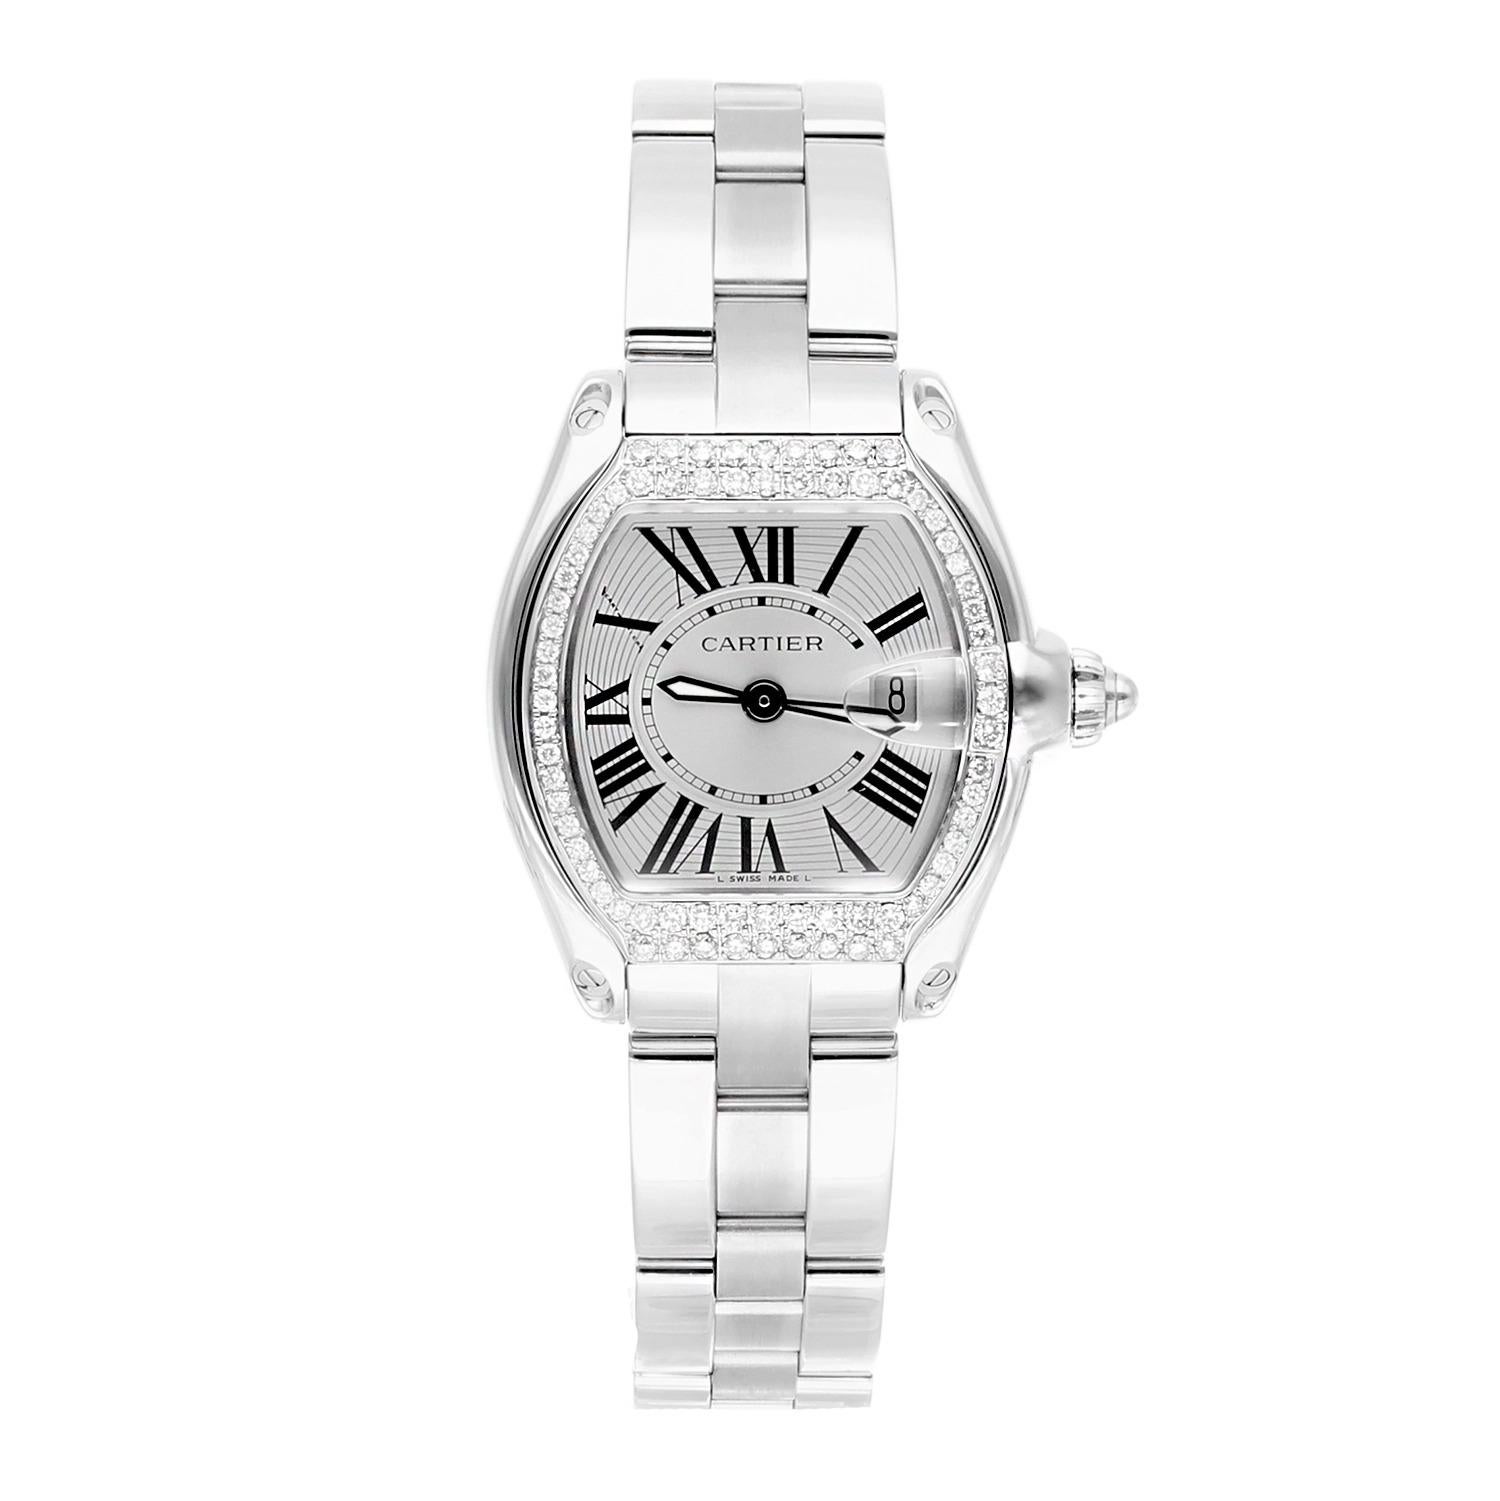 Cartier Roadster Small Damen Silber Zifferblatt Edelstahl Uhr mit Diamant Lünette
Diese Uhr wurde professionell poliert und gewartet und befindet sich in einem ausgezeichneten Gesamtzustand. Es gibt absolut keine sichtbaren Kratzer oder